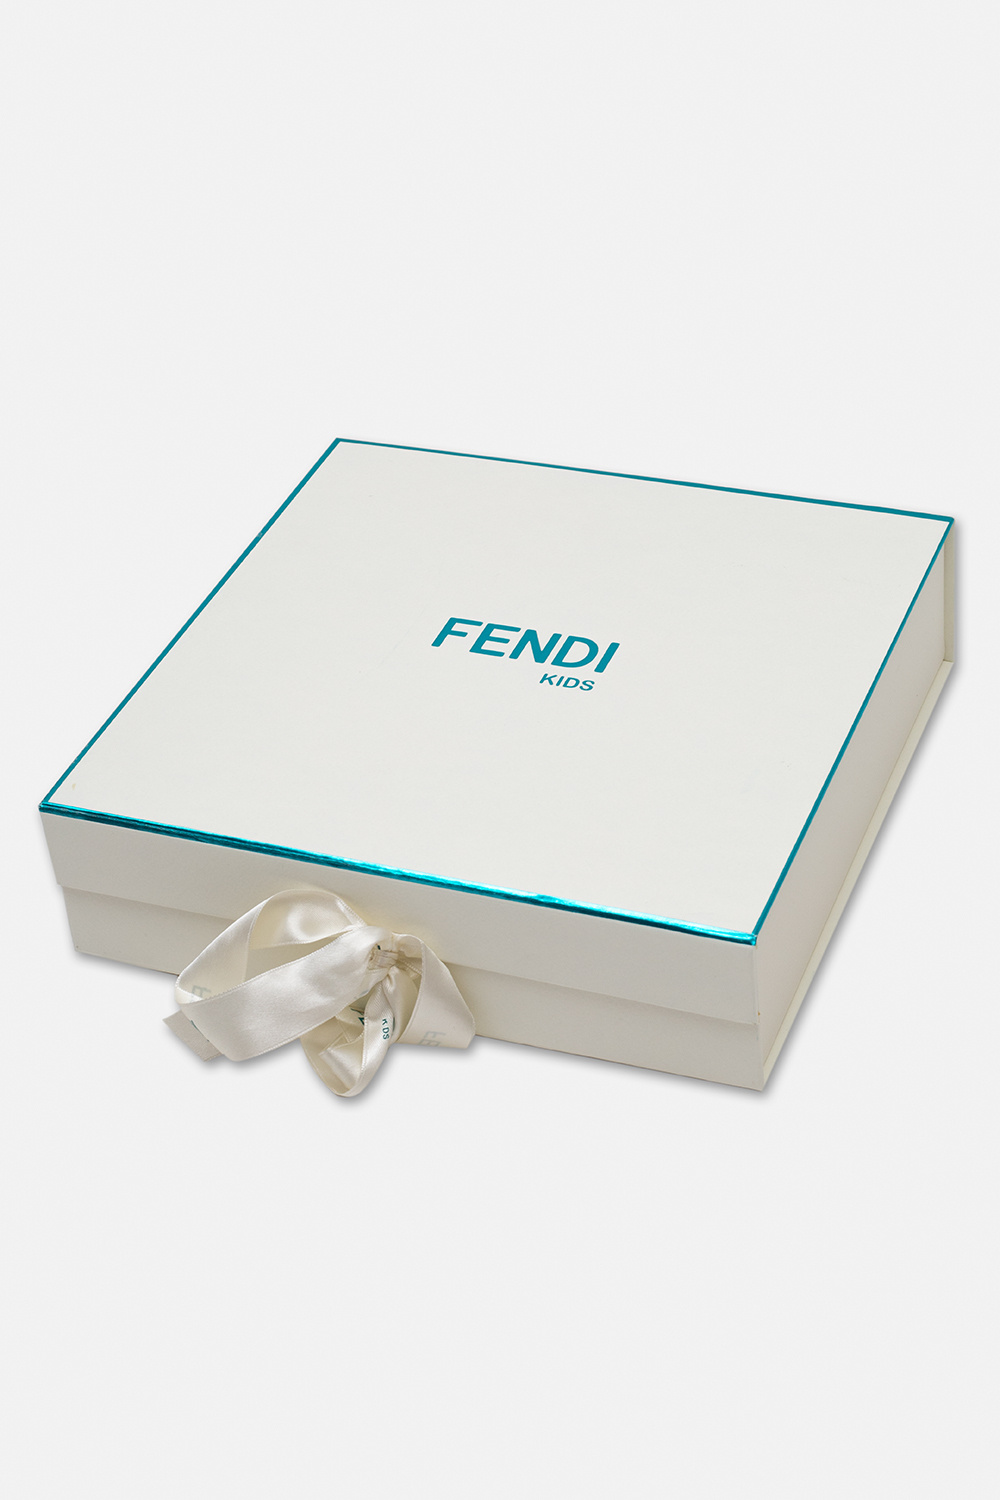 Fendi Kids leg fendi to Open New Shoe Factory in Italys Marche Region